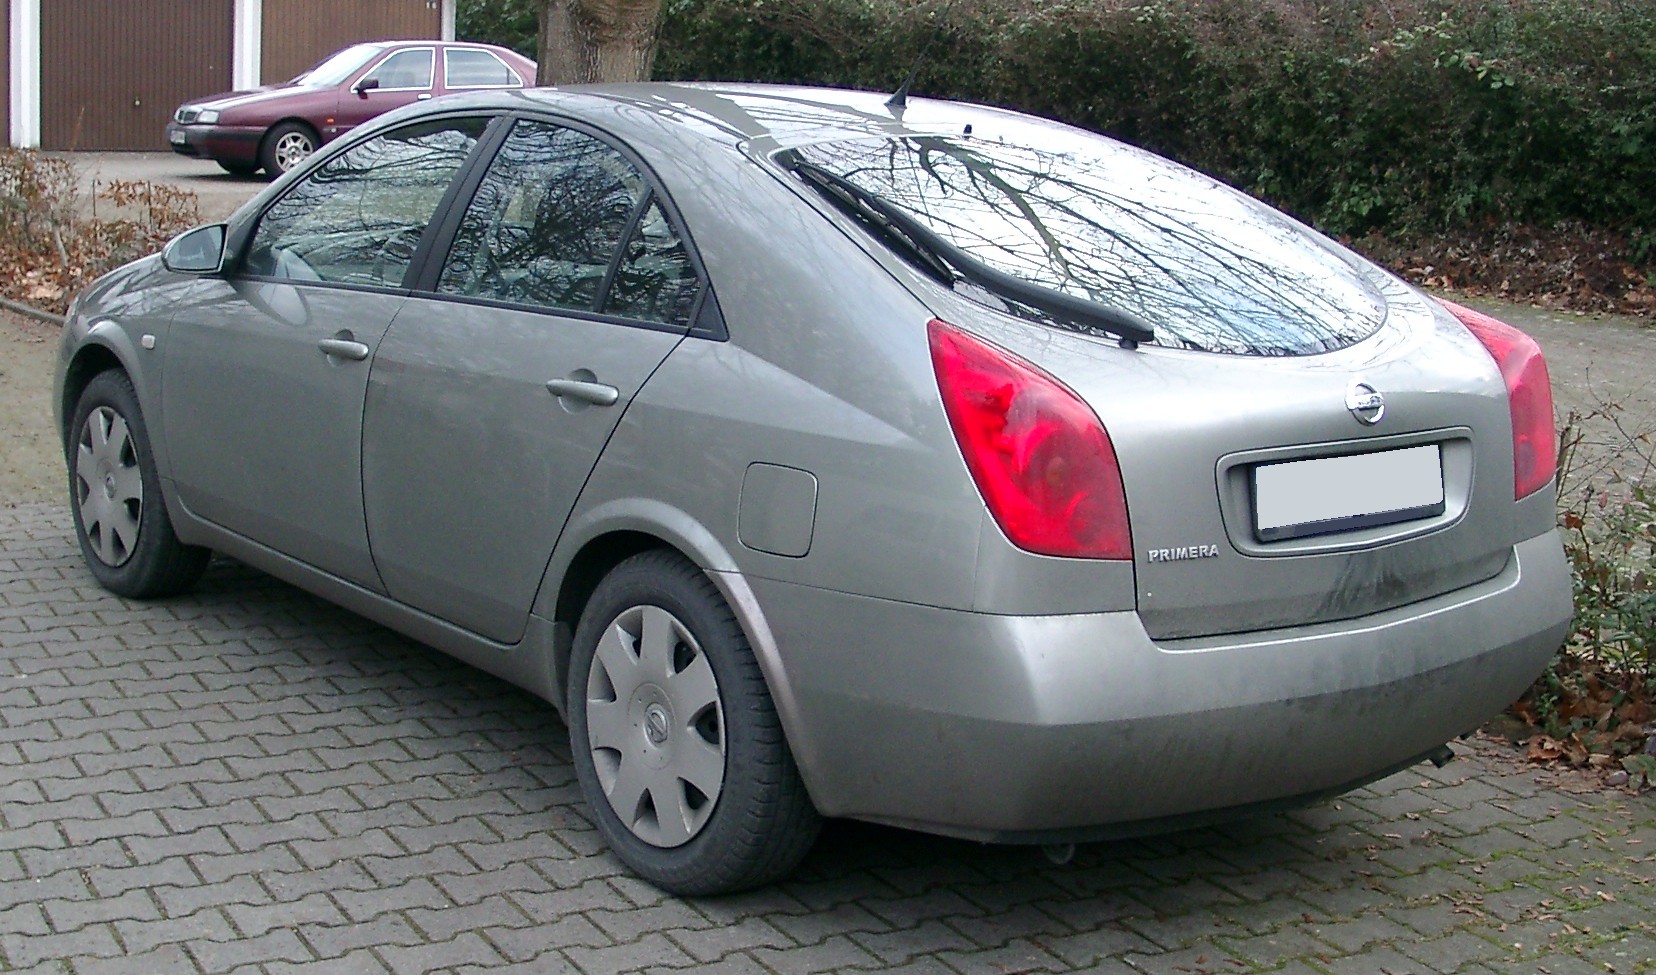 File:Nissan Primera rear 20080102.jpg